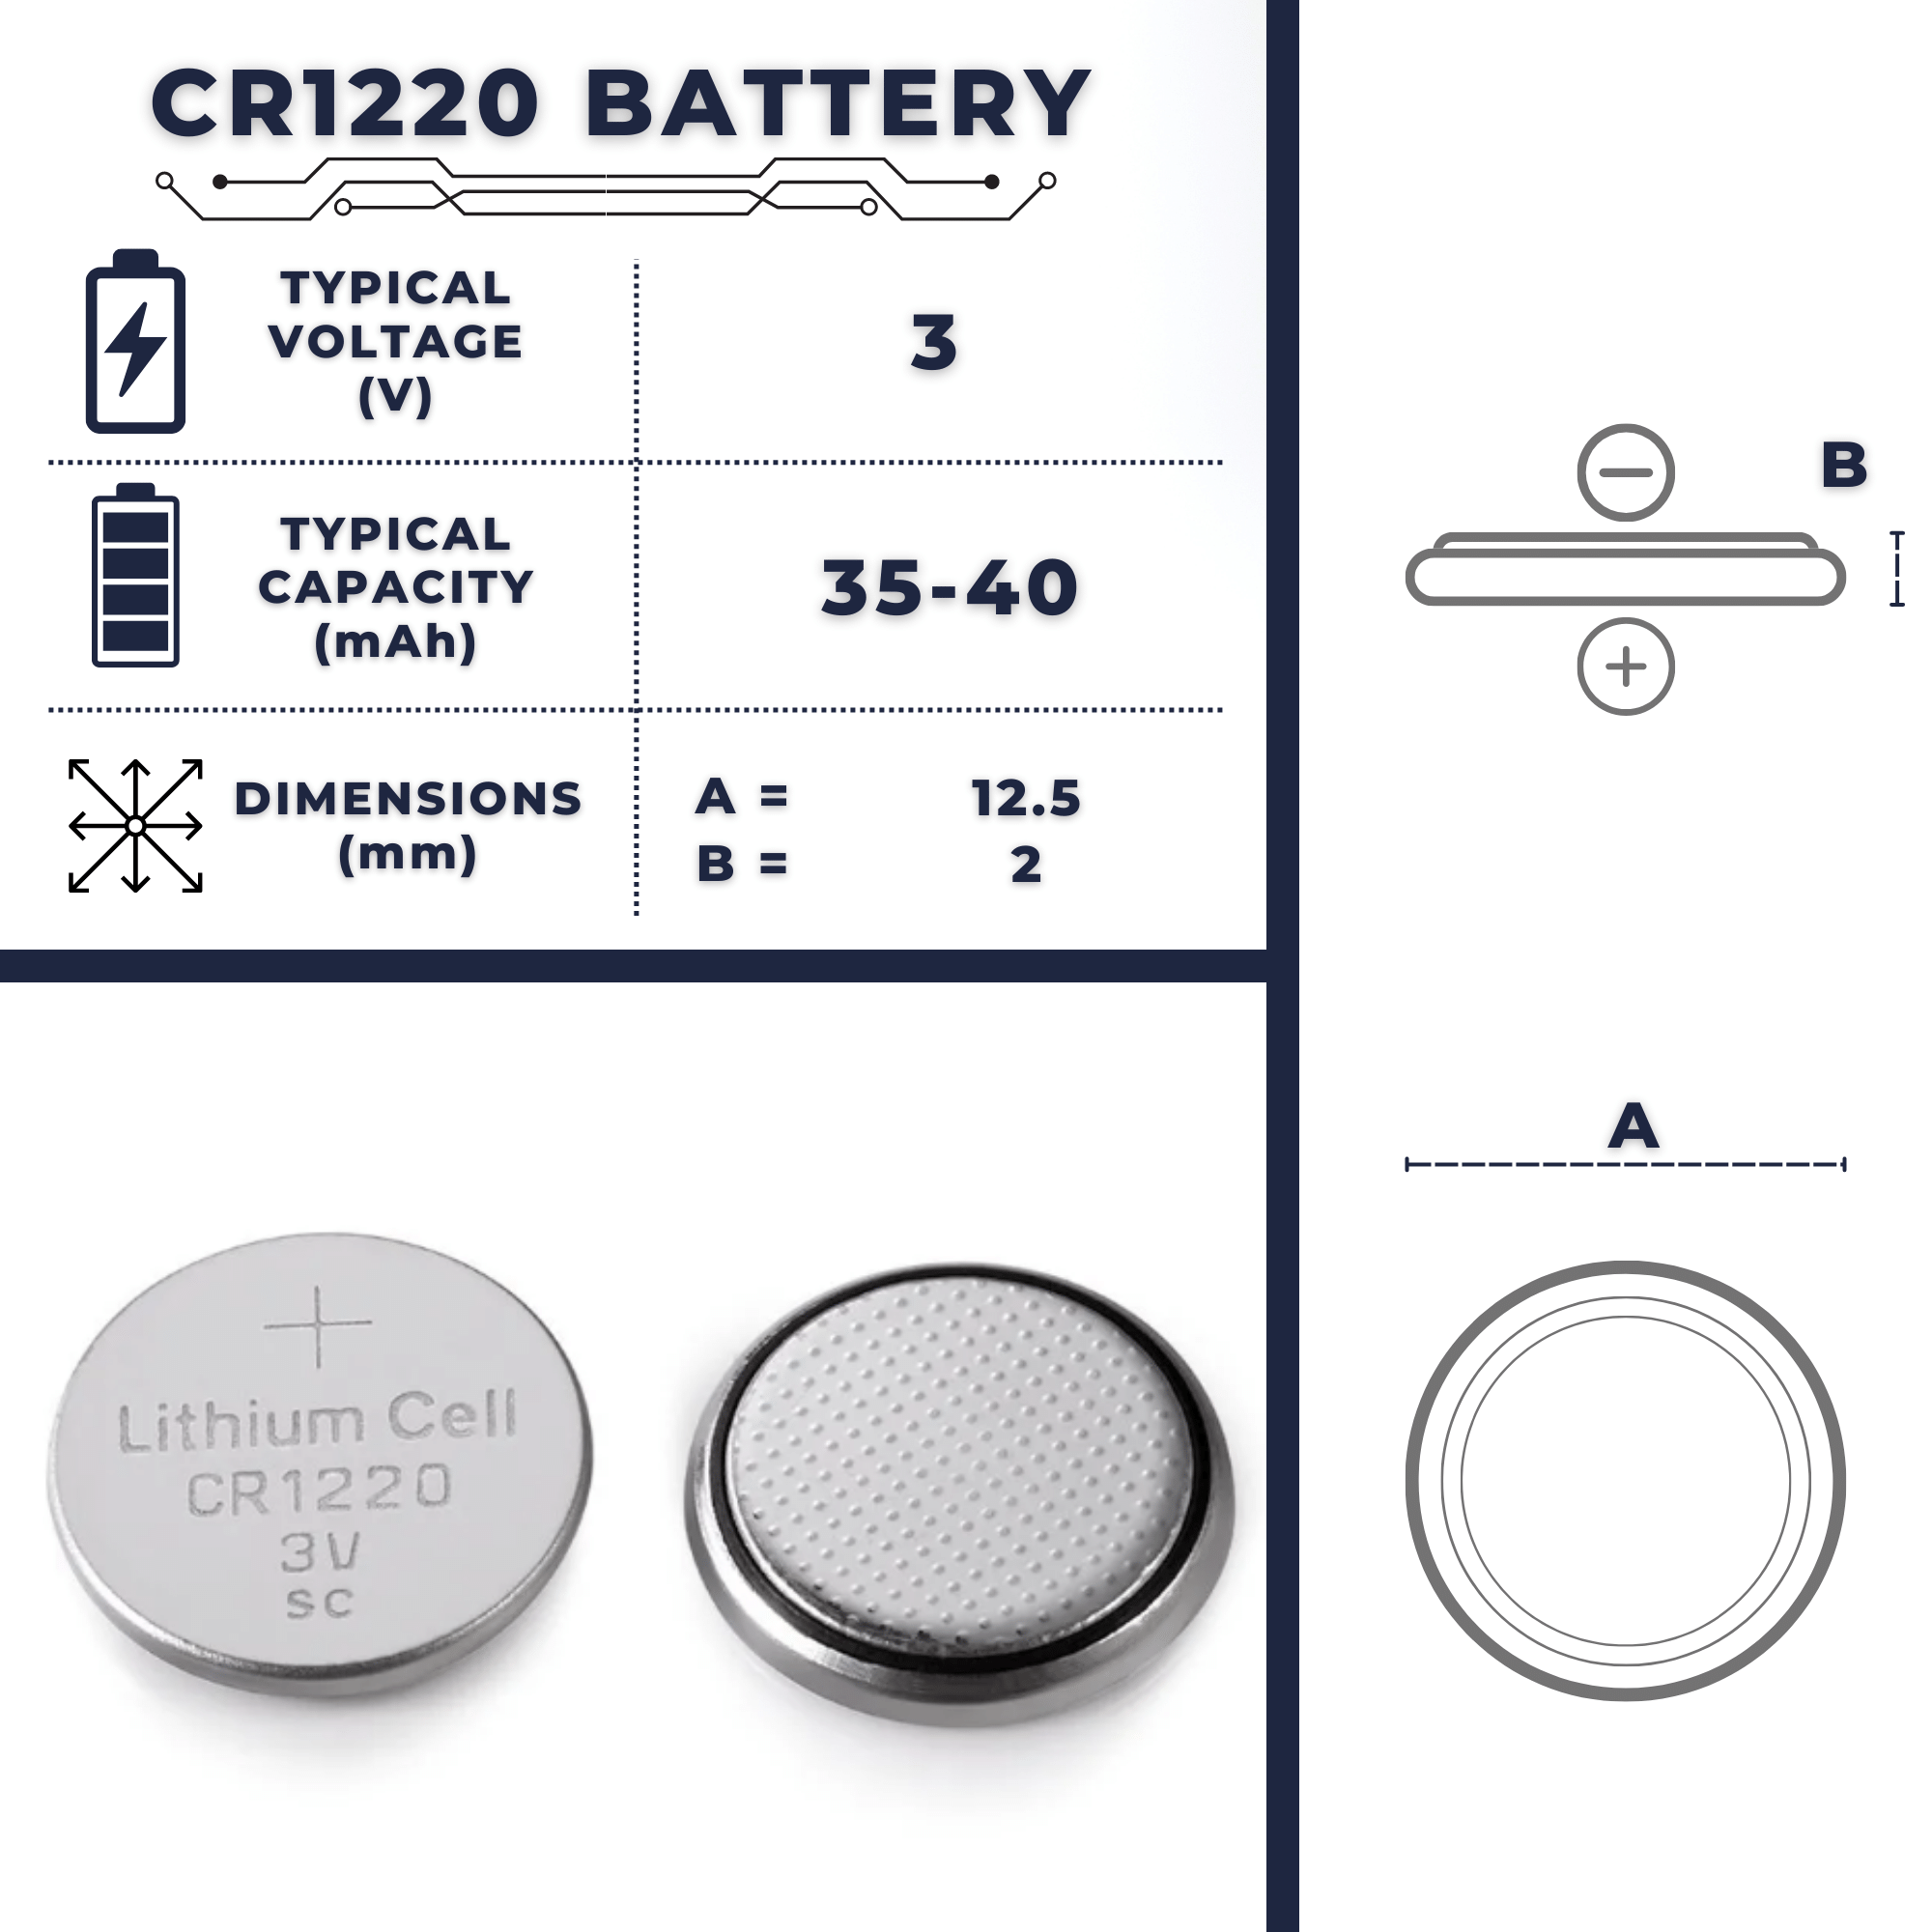 CR1220 Battery